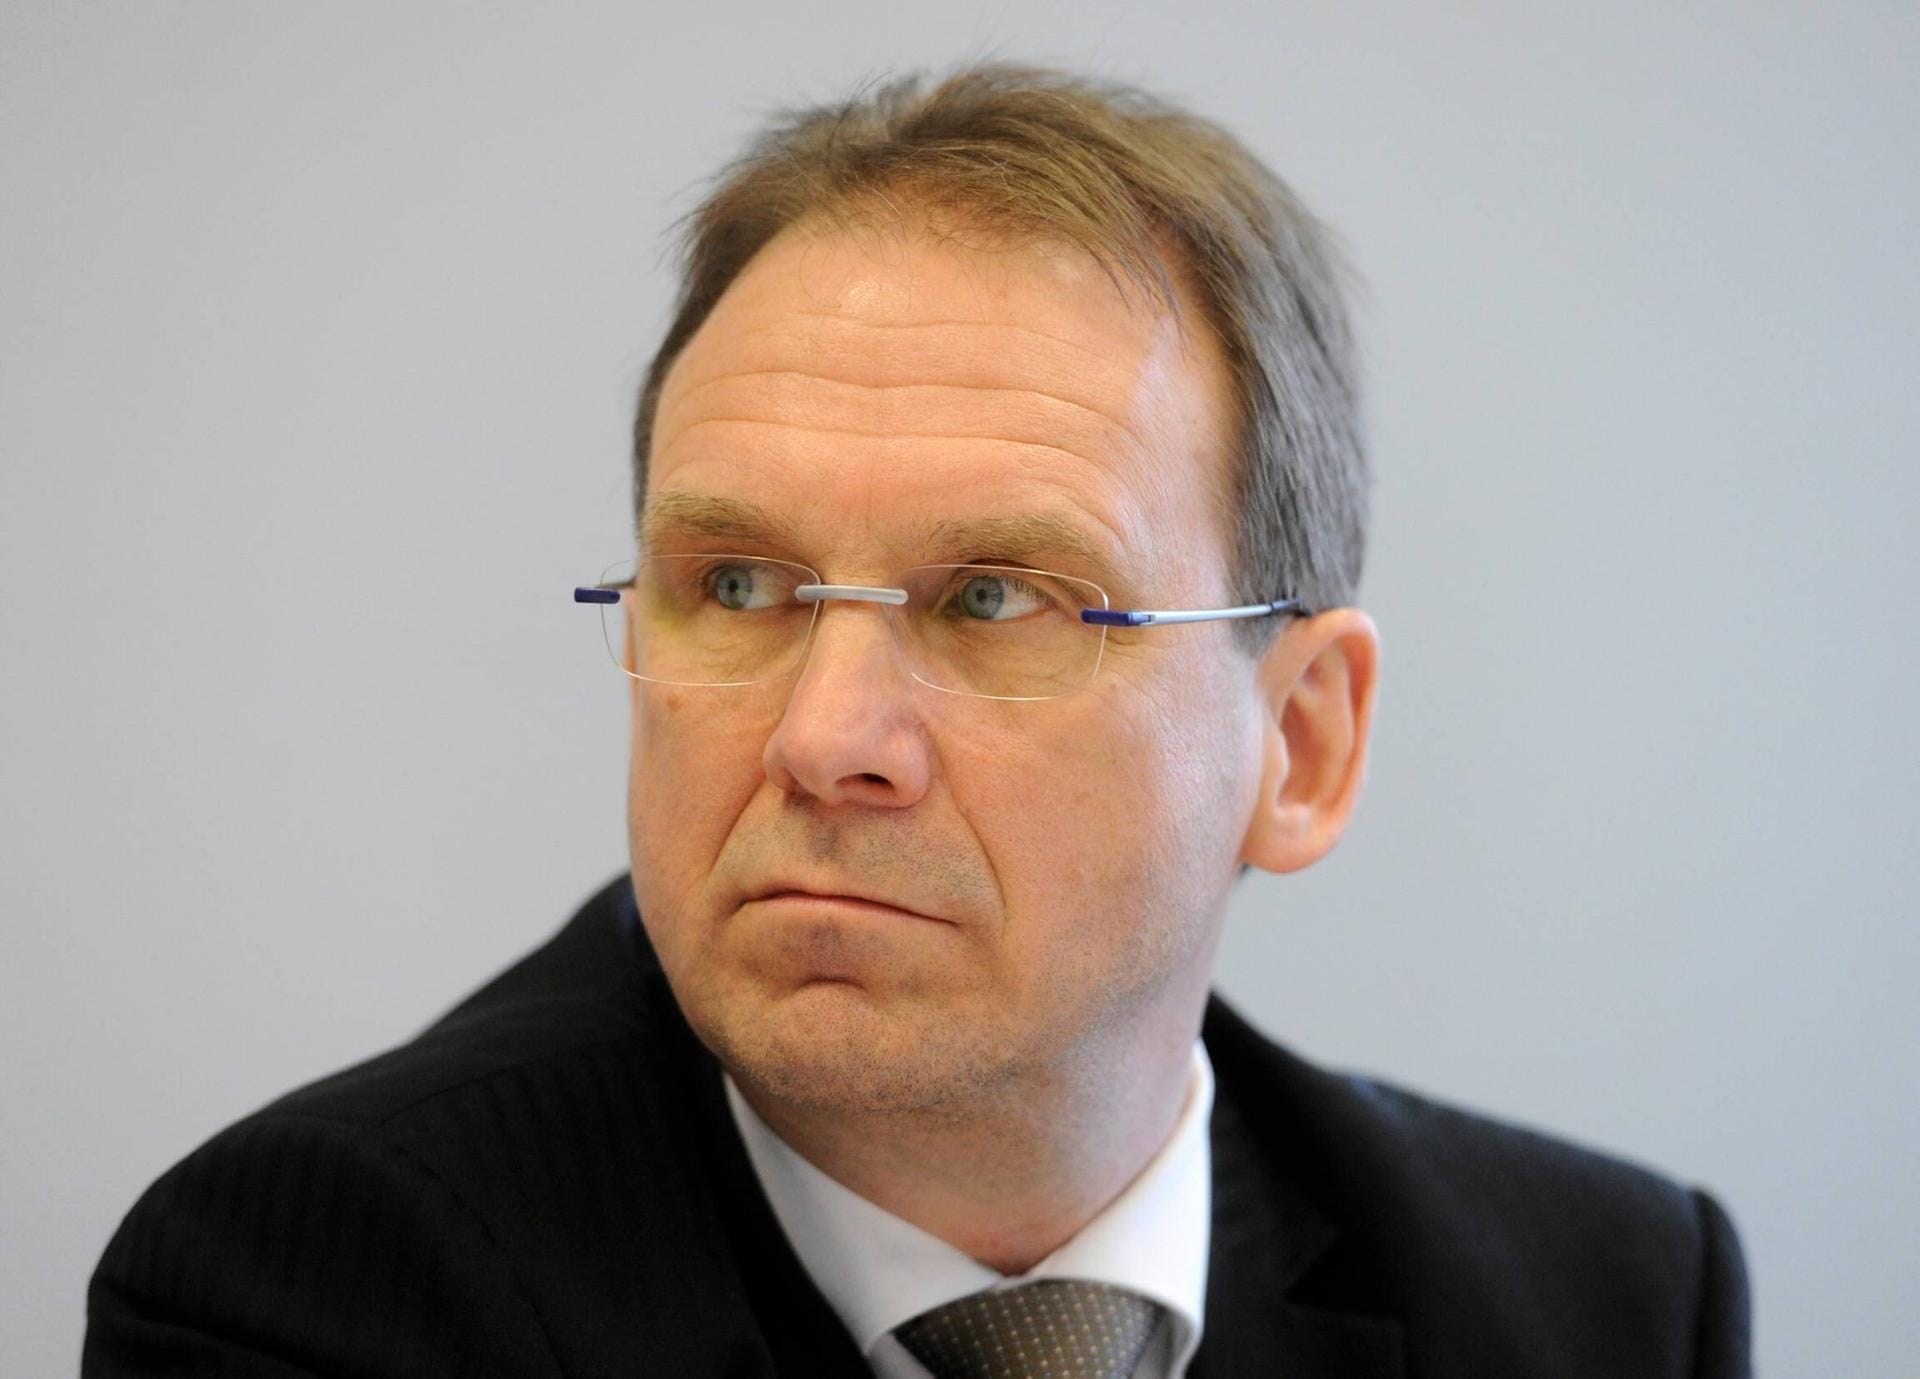 Dieter Althaus ist 2009 vom Amt des Ministerpräsidenten von Thüringen zurückgetreten.Schon 2010 wird er Vizepräsident für den Automobilzulieferer Magna. Aufgabengebiet: "Regierungsangelegenheiten".